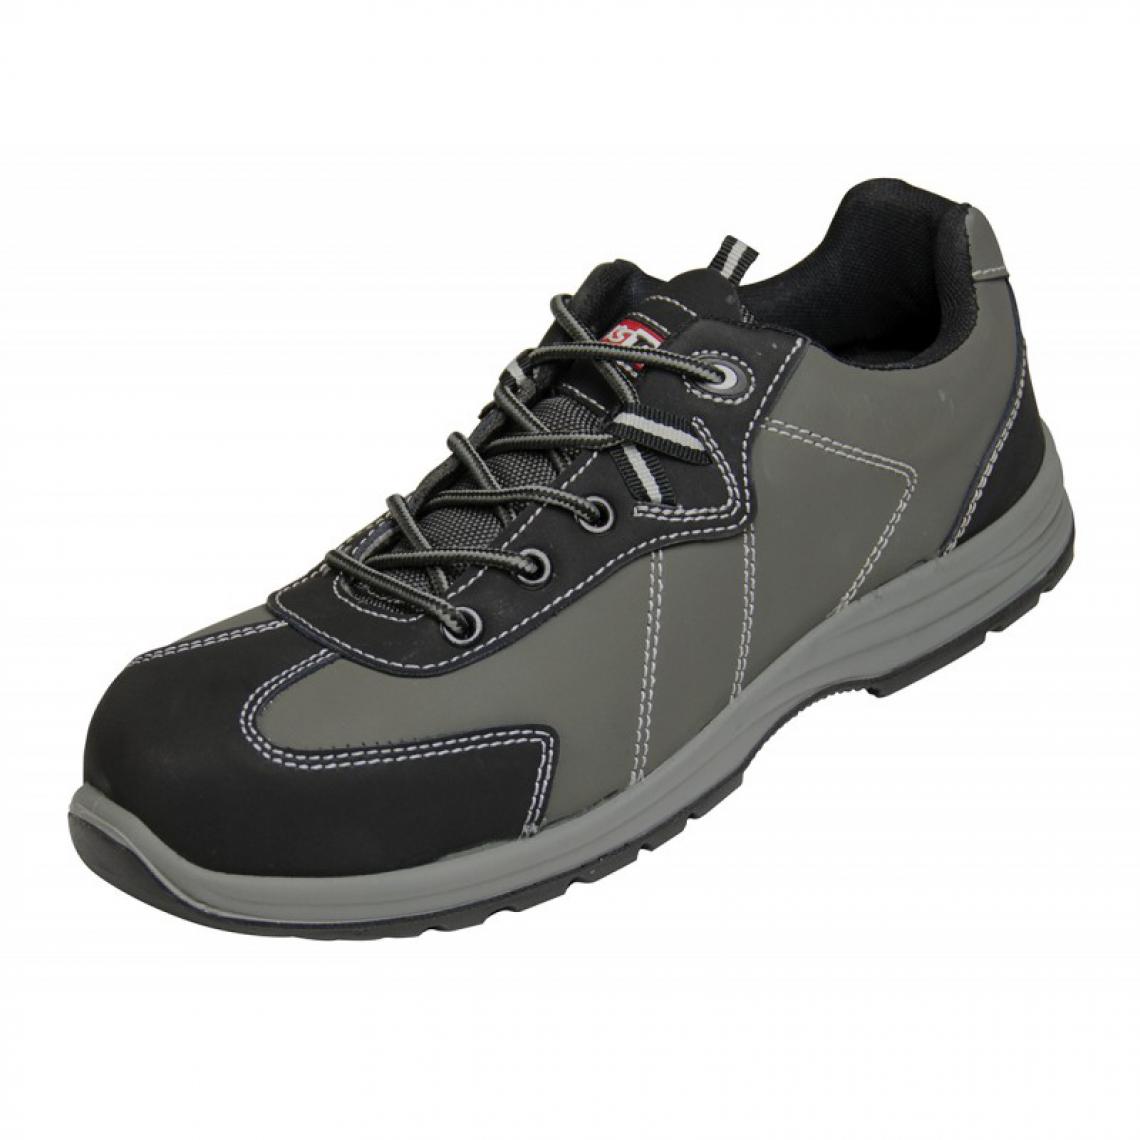 Kstools - Chaussures de sécurité KSTOOLS Couleur grise taille 40 - Equipement de Protection Individuelle